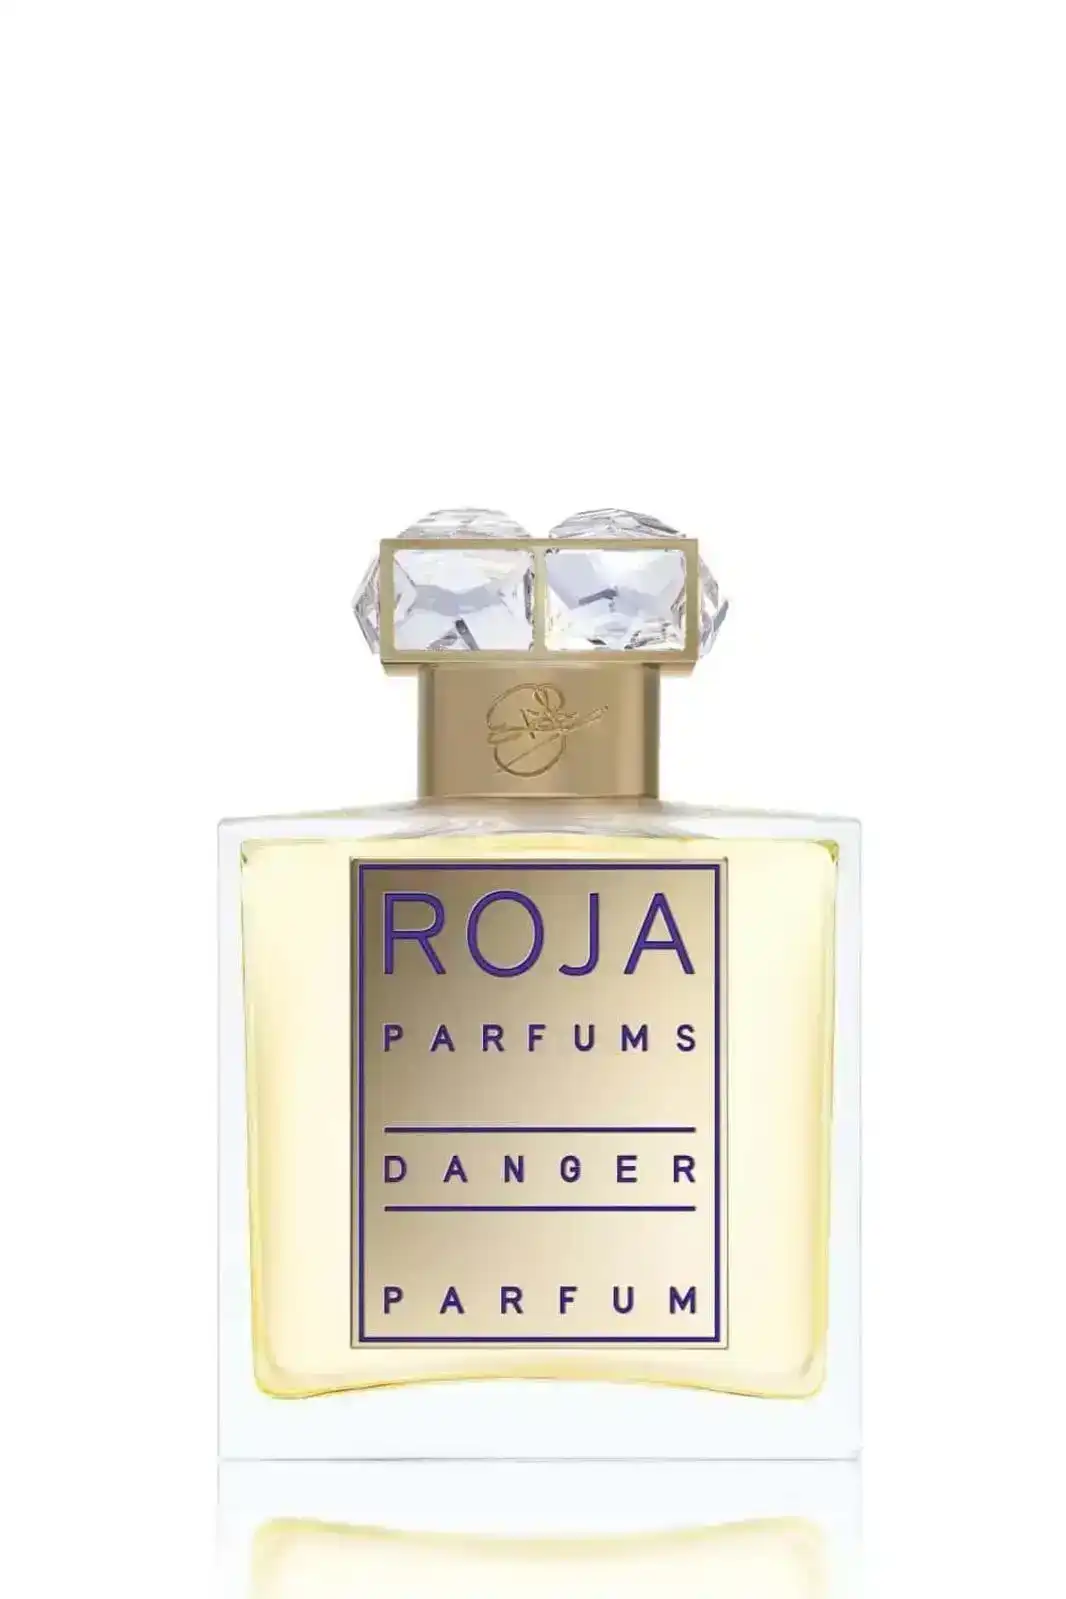 Roja Danger Pour Femme Parfum 50ml